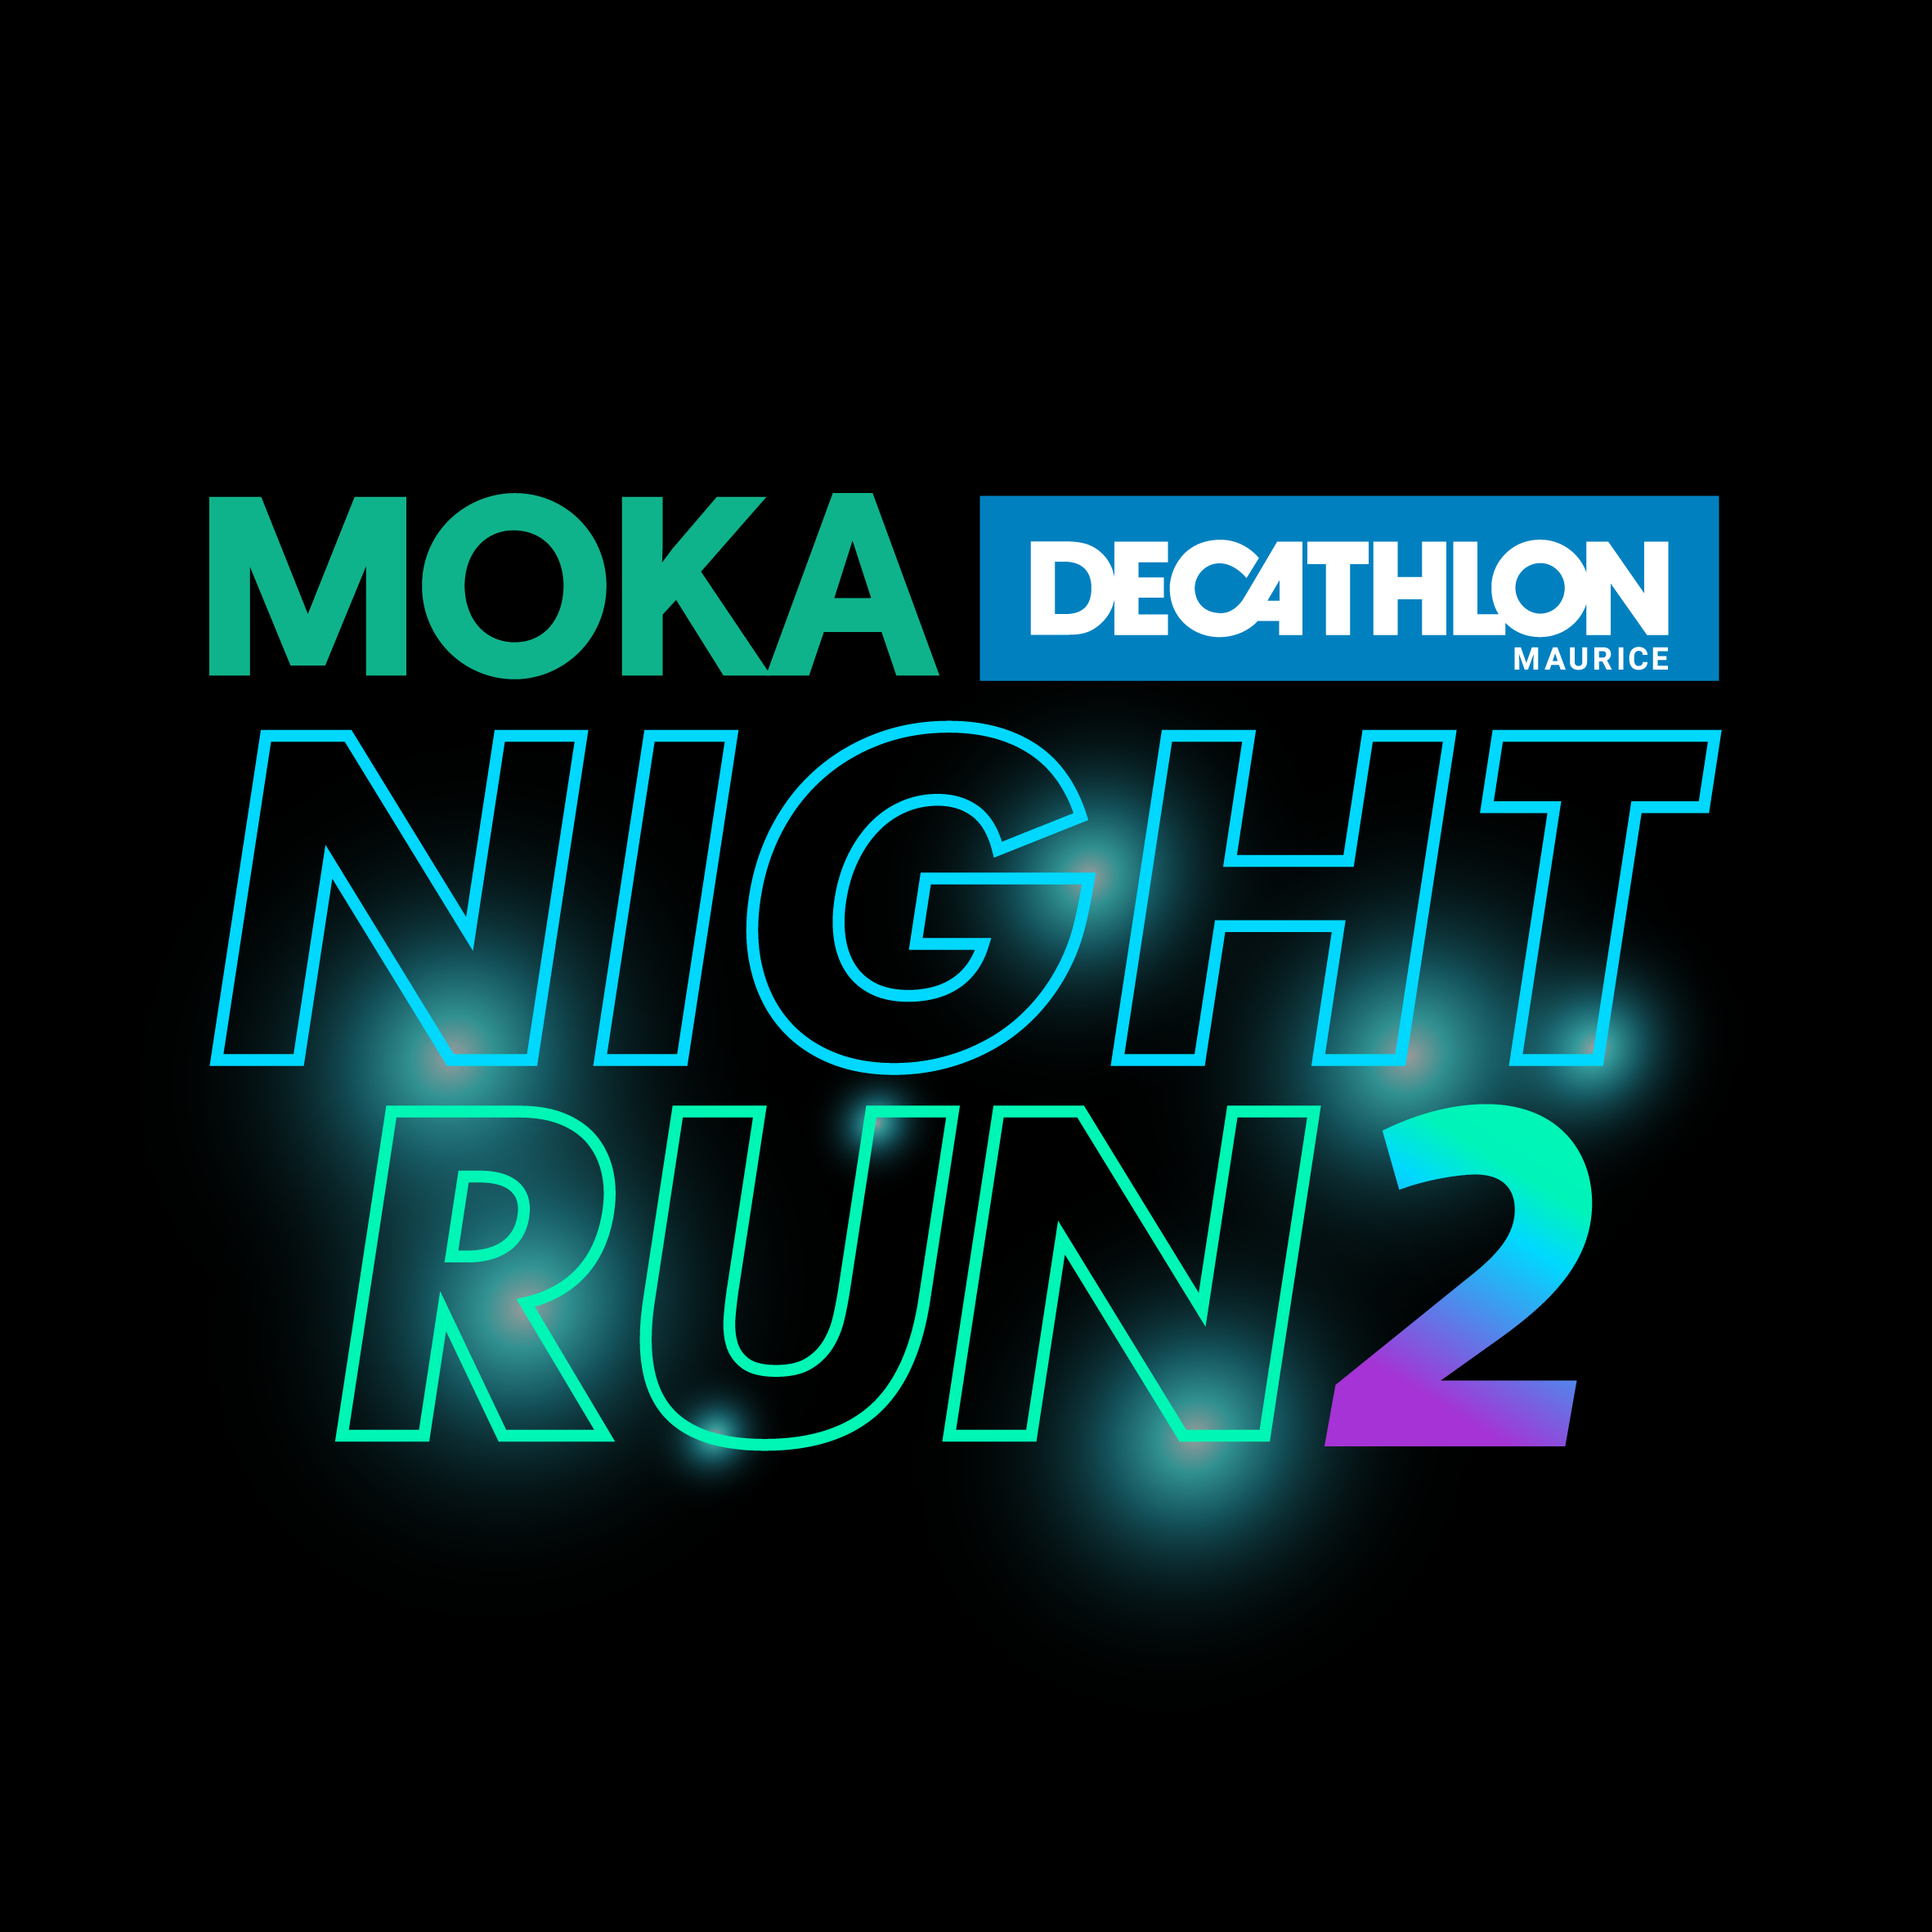 Moka Decathlon Night Run 2